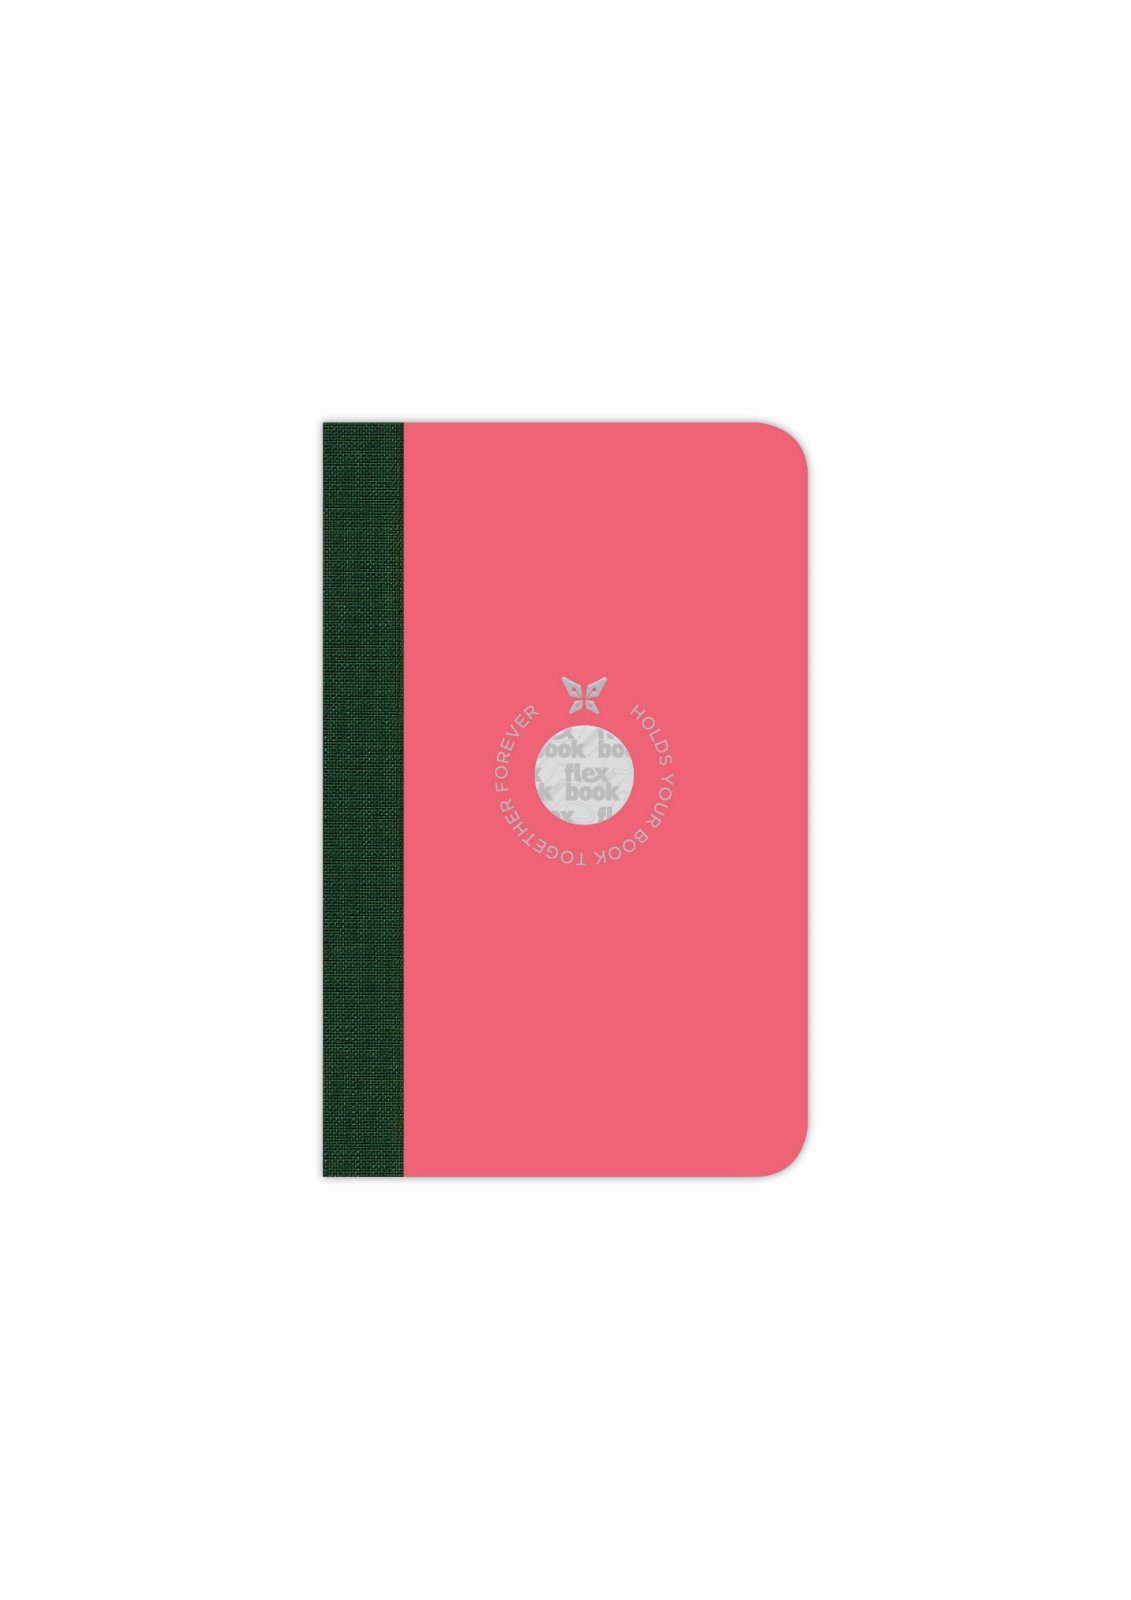 Flexbook Notizbuch Flexbook Smartbook Liniert 160 viele Seiten Ökopapiereinband Pink 9*14cm Größen/Fa